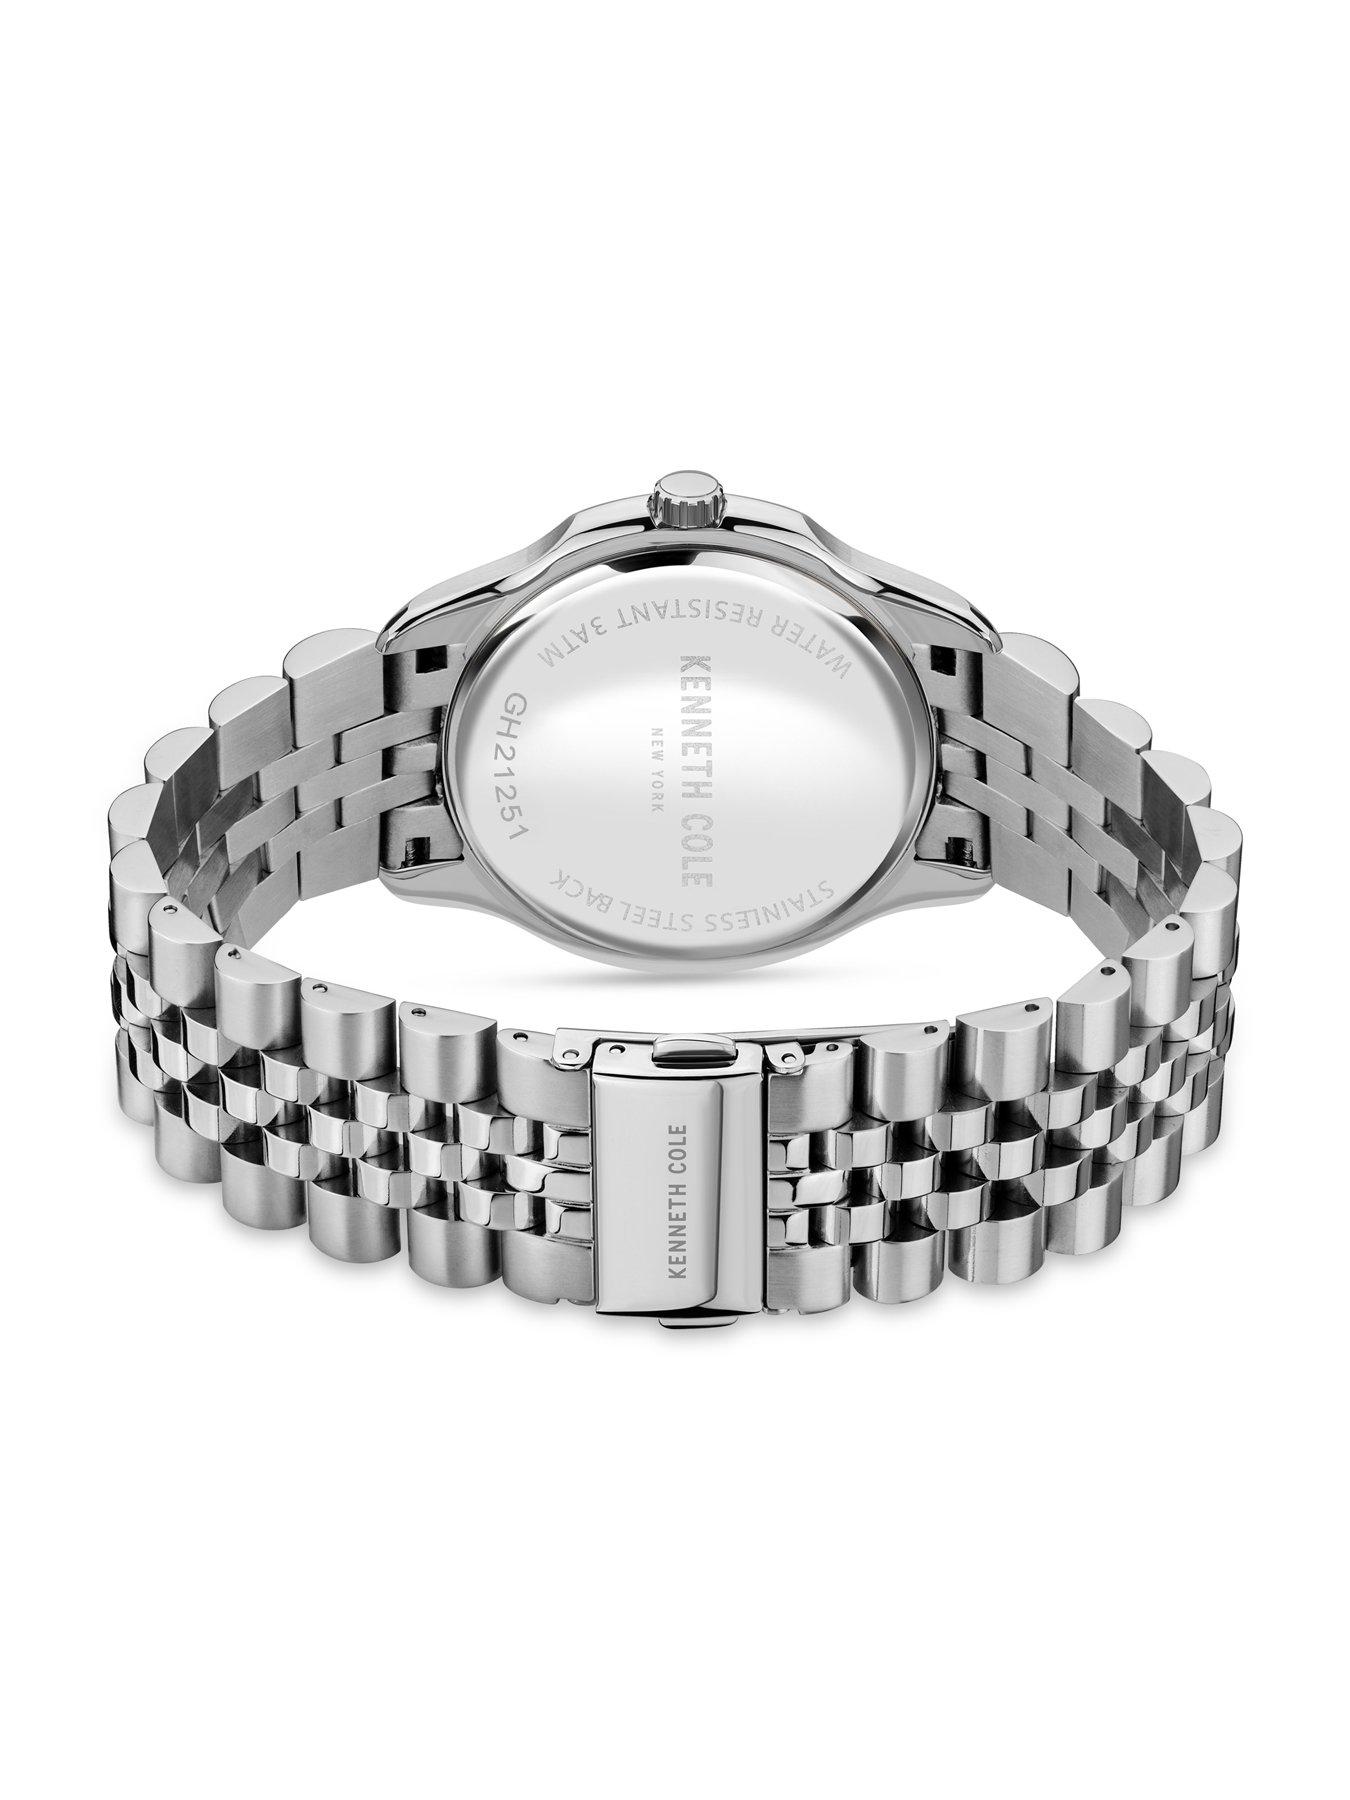  Gents Silver Stainless Steel Bracelet Watch